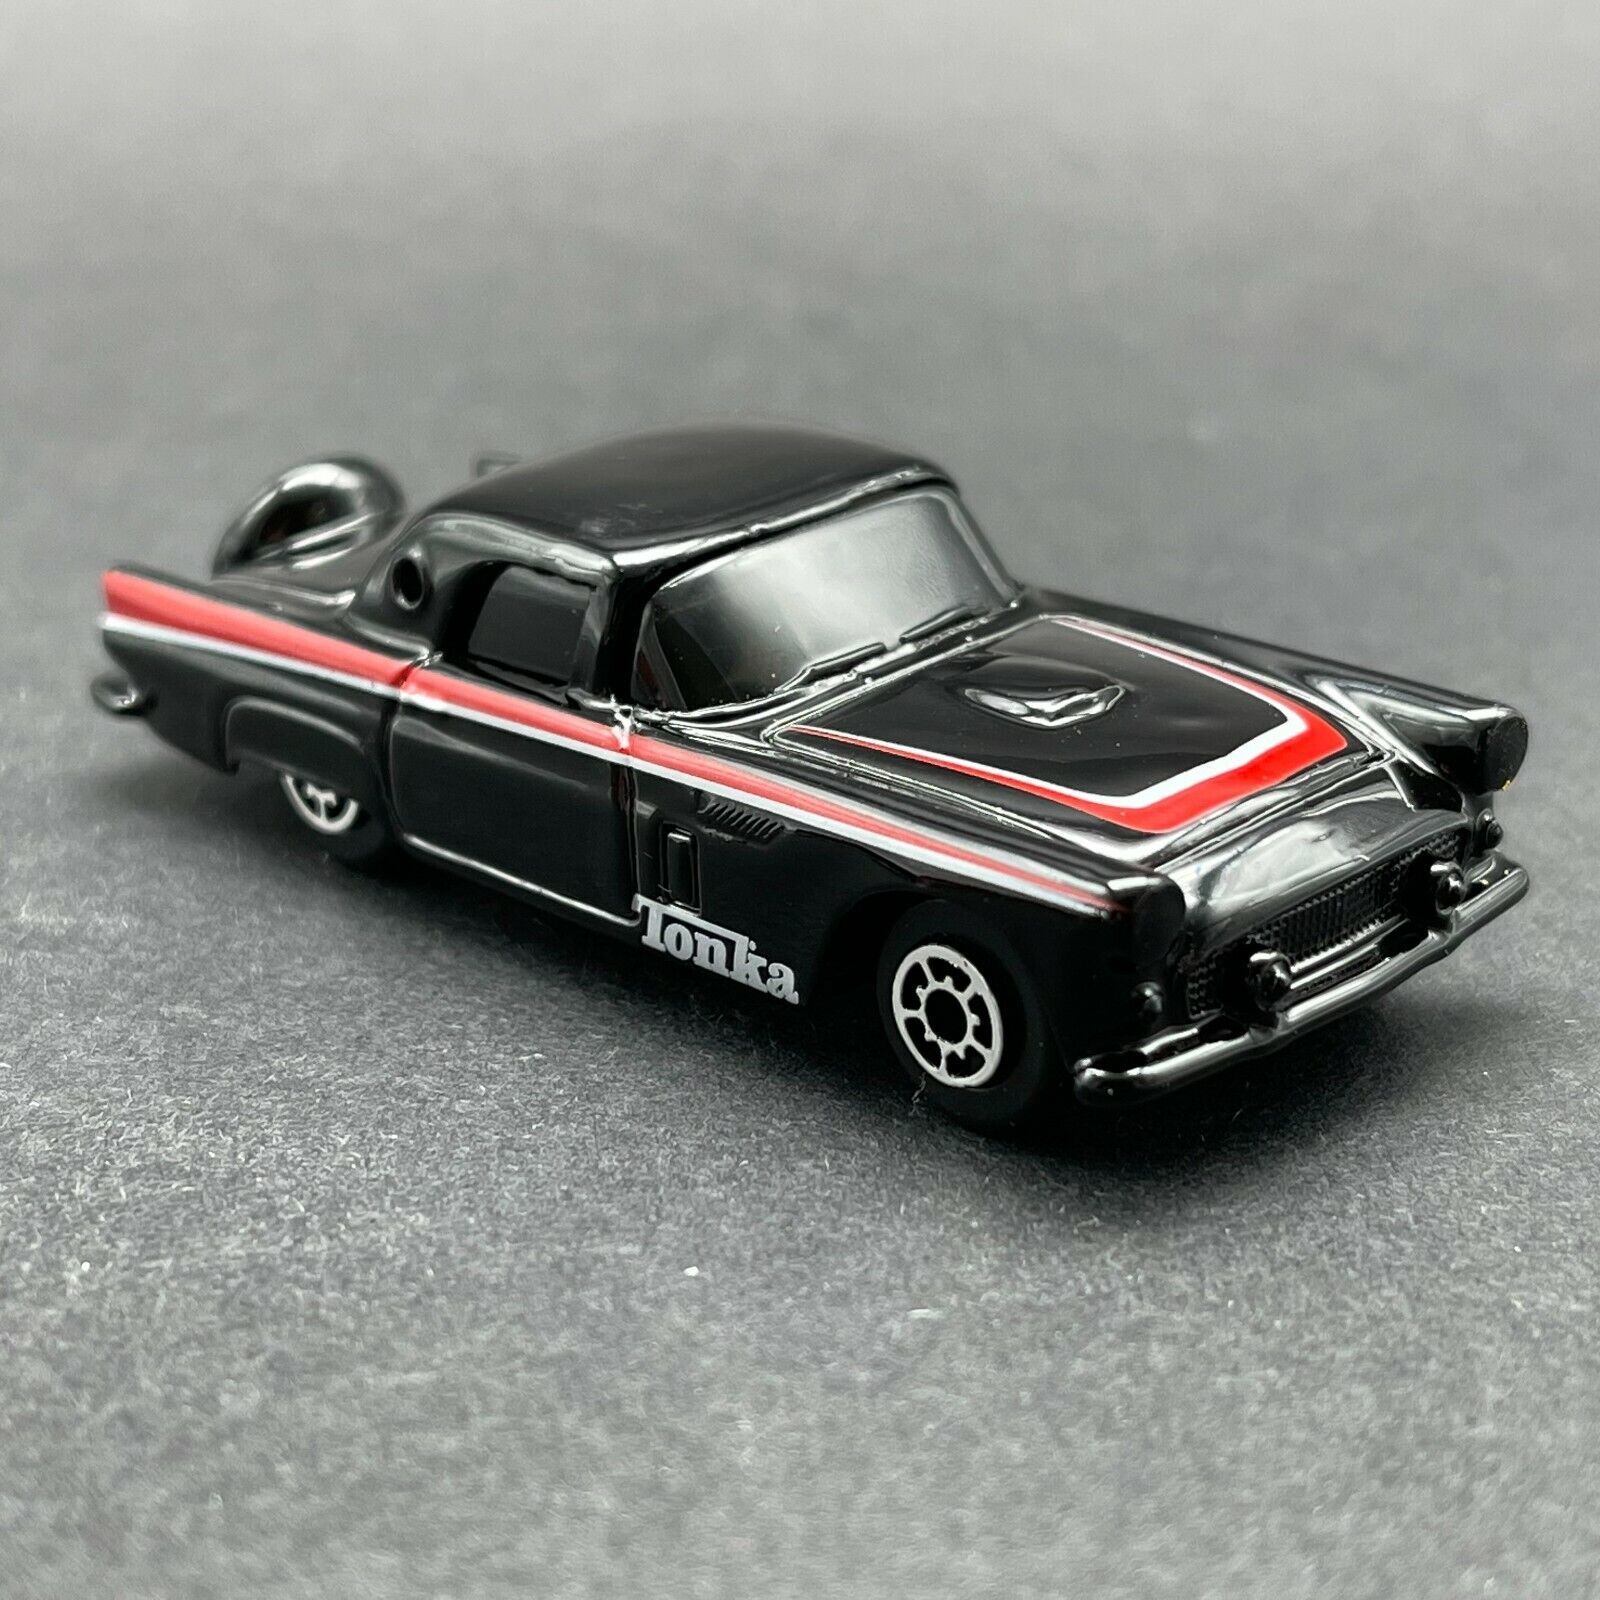 Maisto Tonka 1956 56 Ford Thunderbird Diecast Car Black Diecast 1/64 Scale Loose - £9.15 GBP